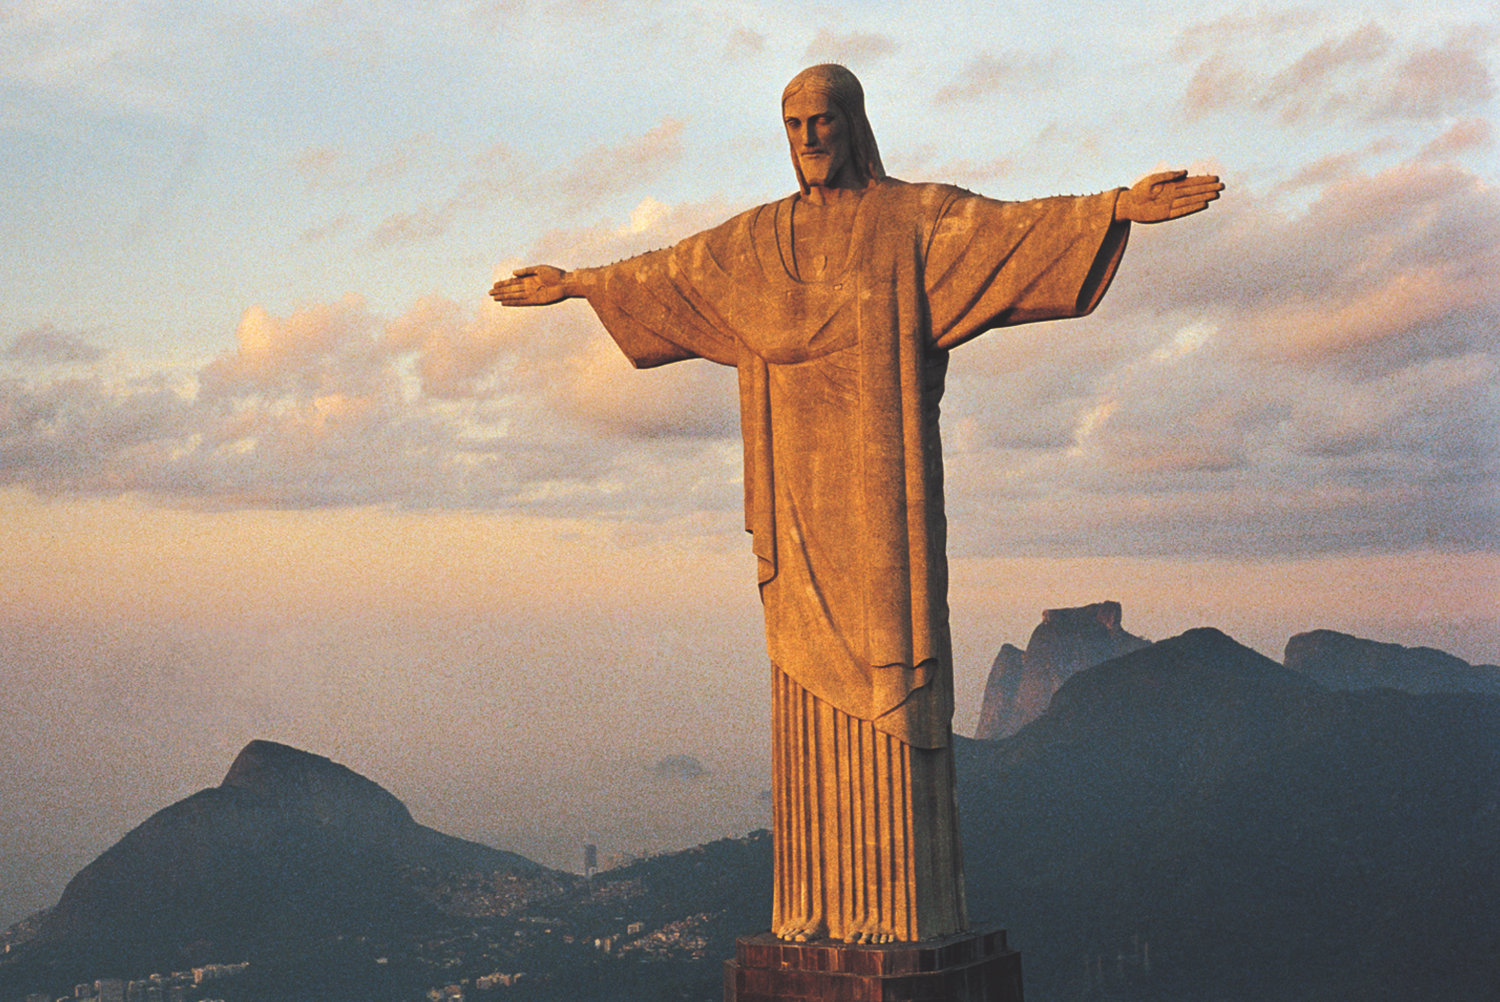 Christ Redeemer, Brazil Travel Jigsaw Puzzle